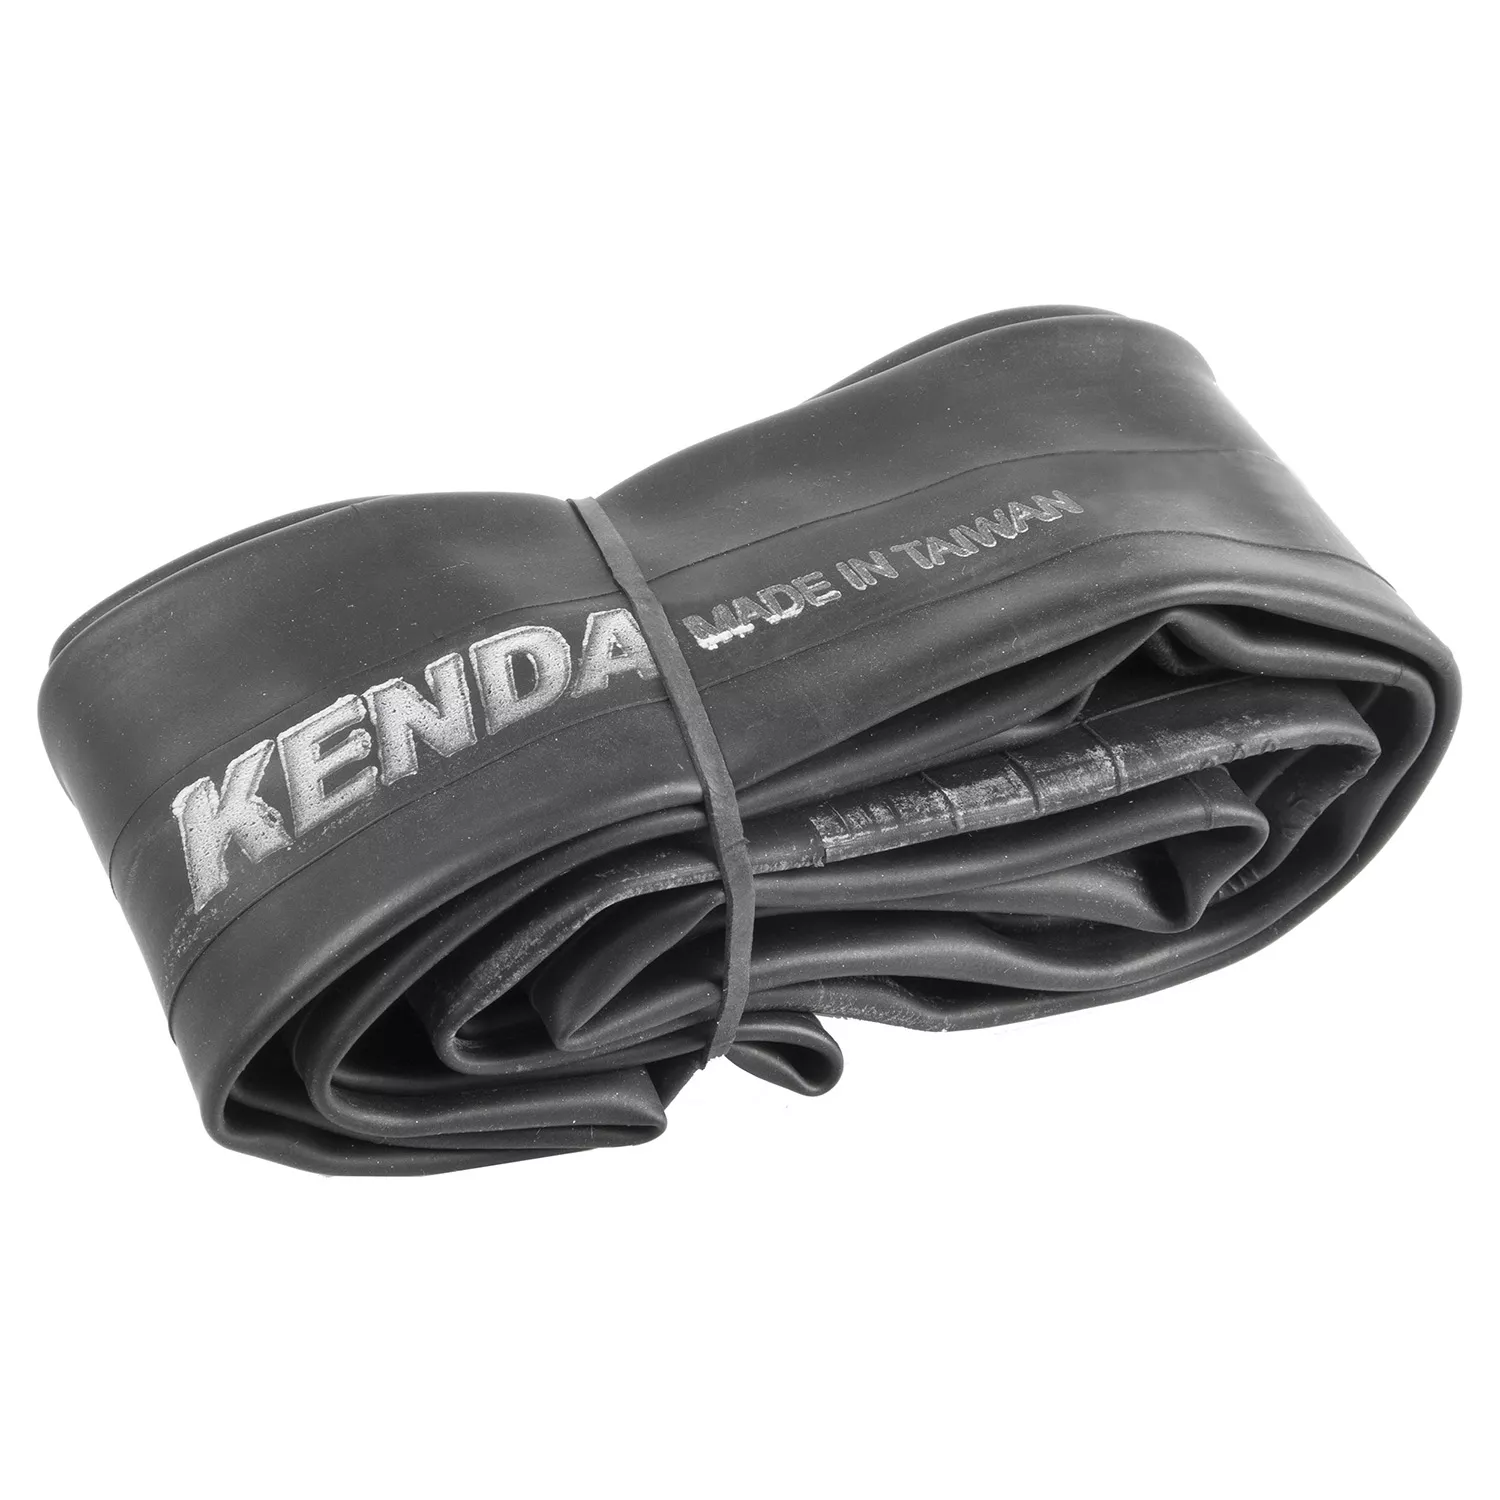 Camera d'aria KENDA Ultralite per bicicletta 27,5 pollici x 2,1 -2,4 pollici FV